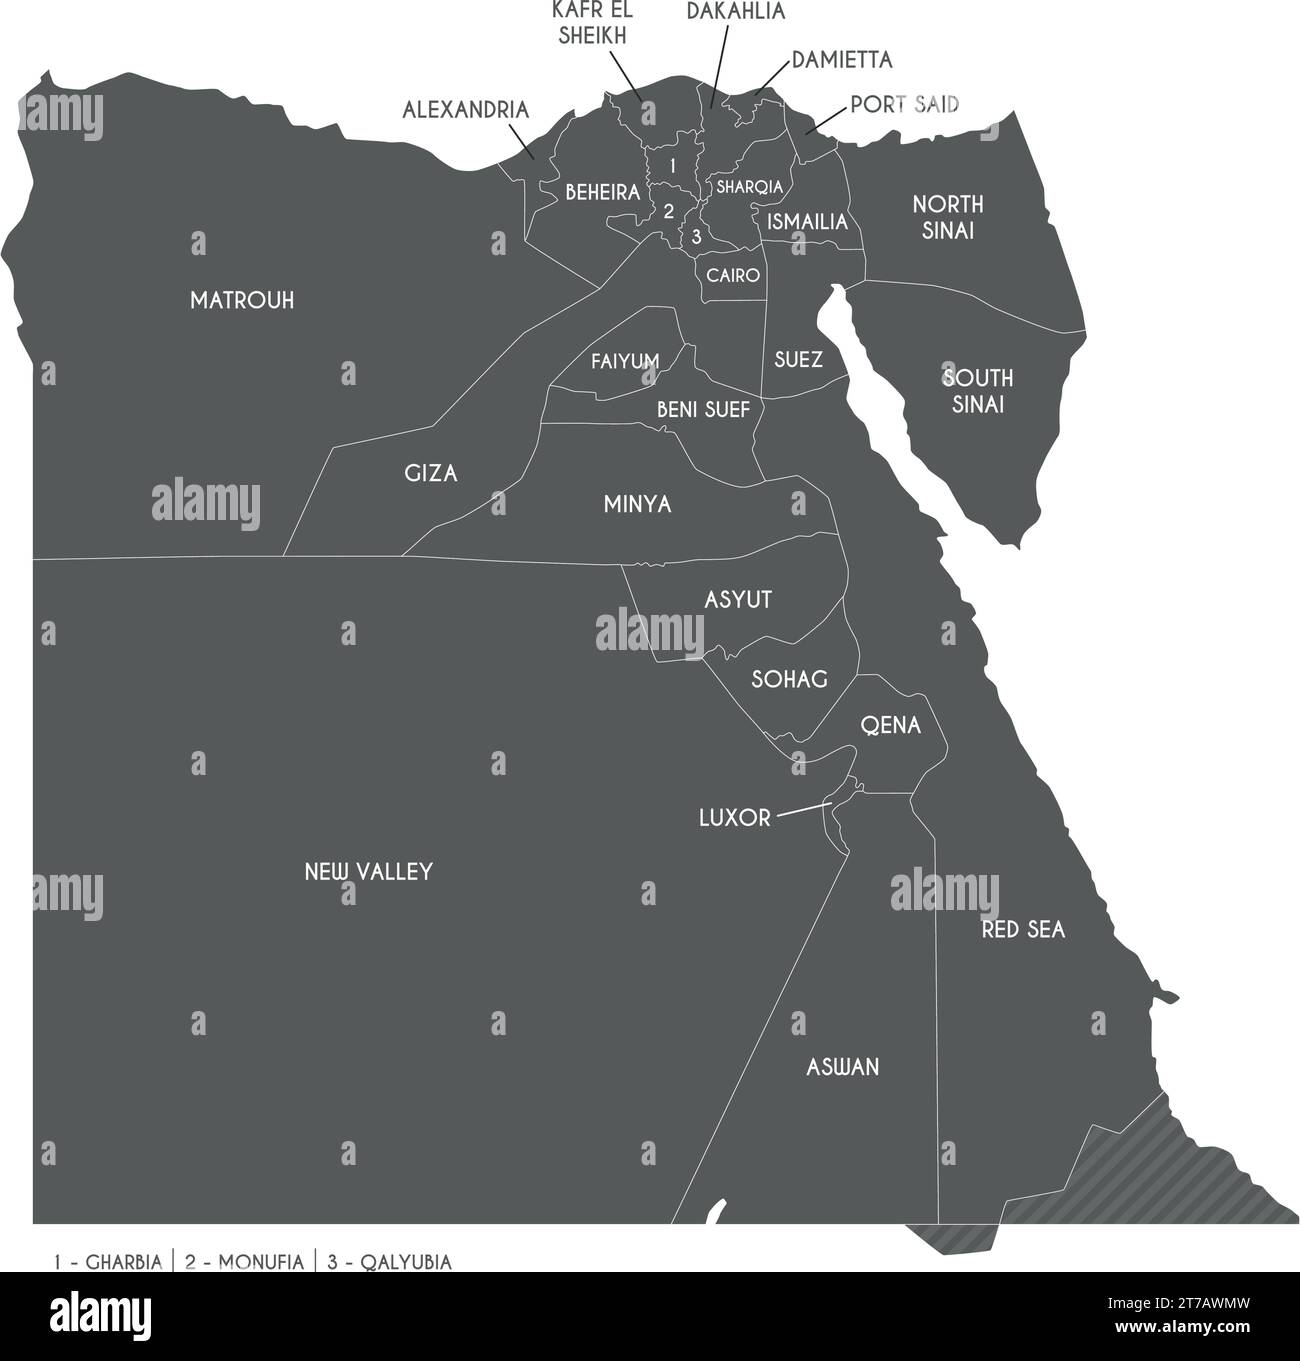 Mappa vettoriale dell'Egitto con governatorati o province e divisioni amministrative. Livelli modificabili e chiaramente etichettati. Illustrazione Vettoriale